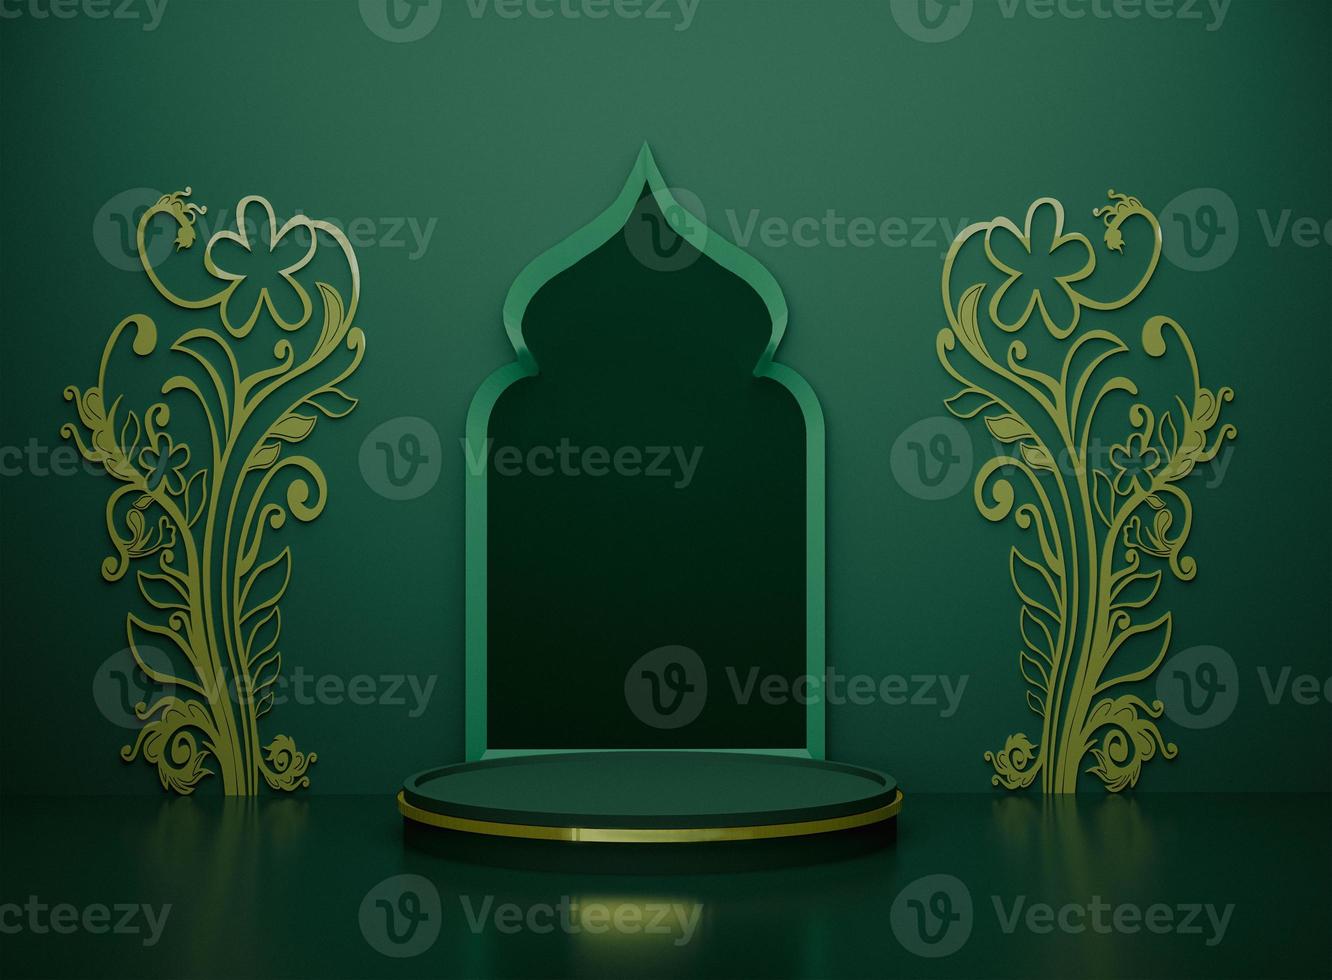 arco de mezquita de decoración de fondo de color suave islámico verde en exhibición de producto podio etiqueta dorada en diseño floral circular imagen de representación 3d de dos lados foto